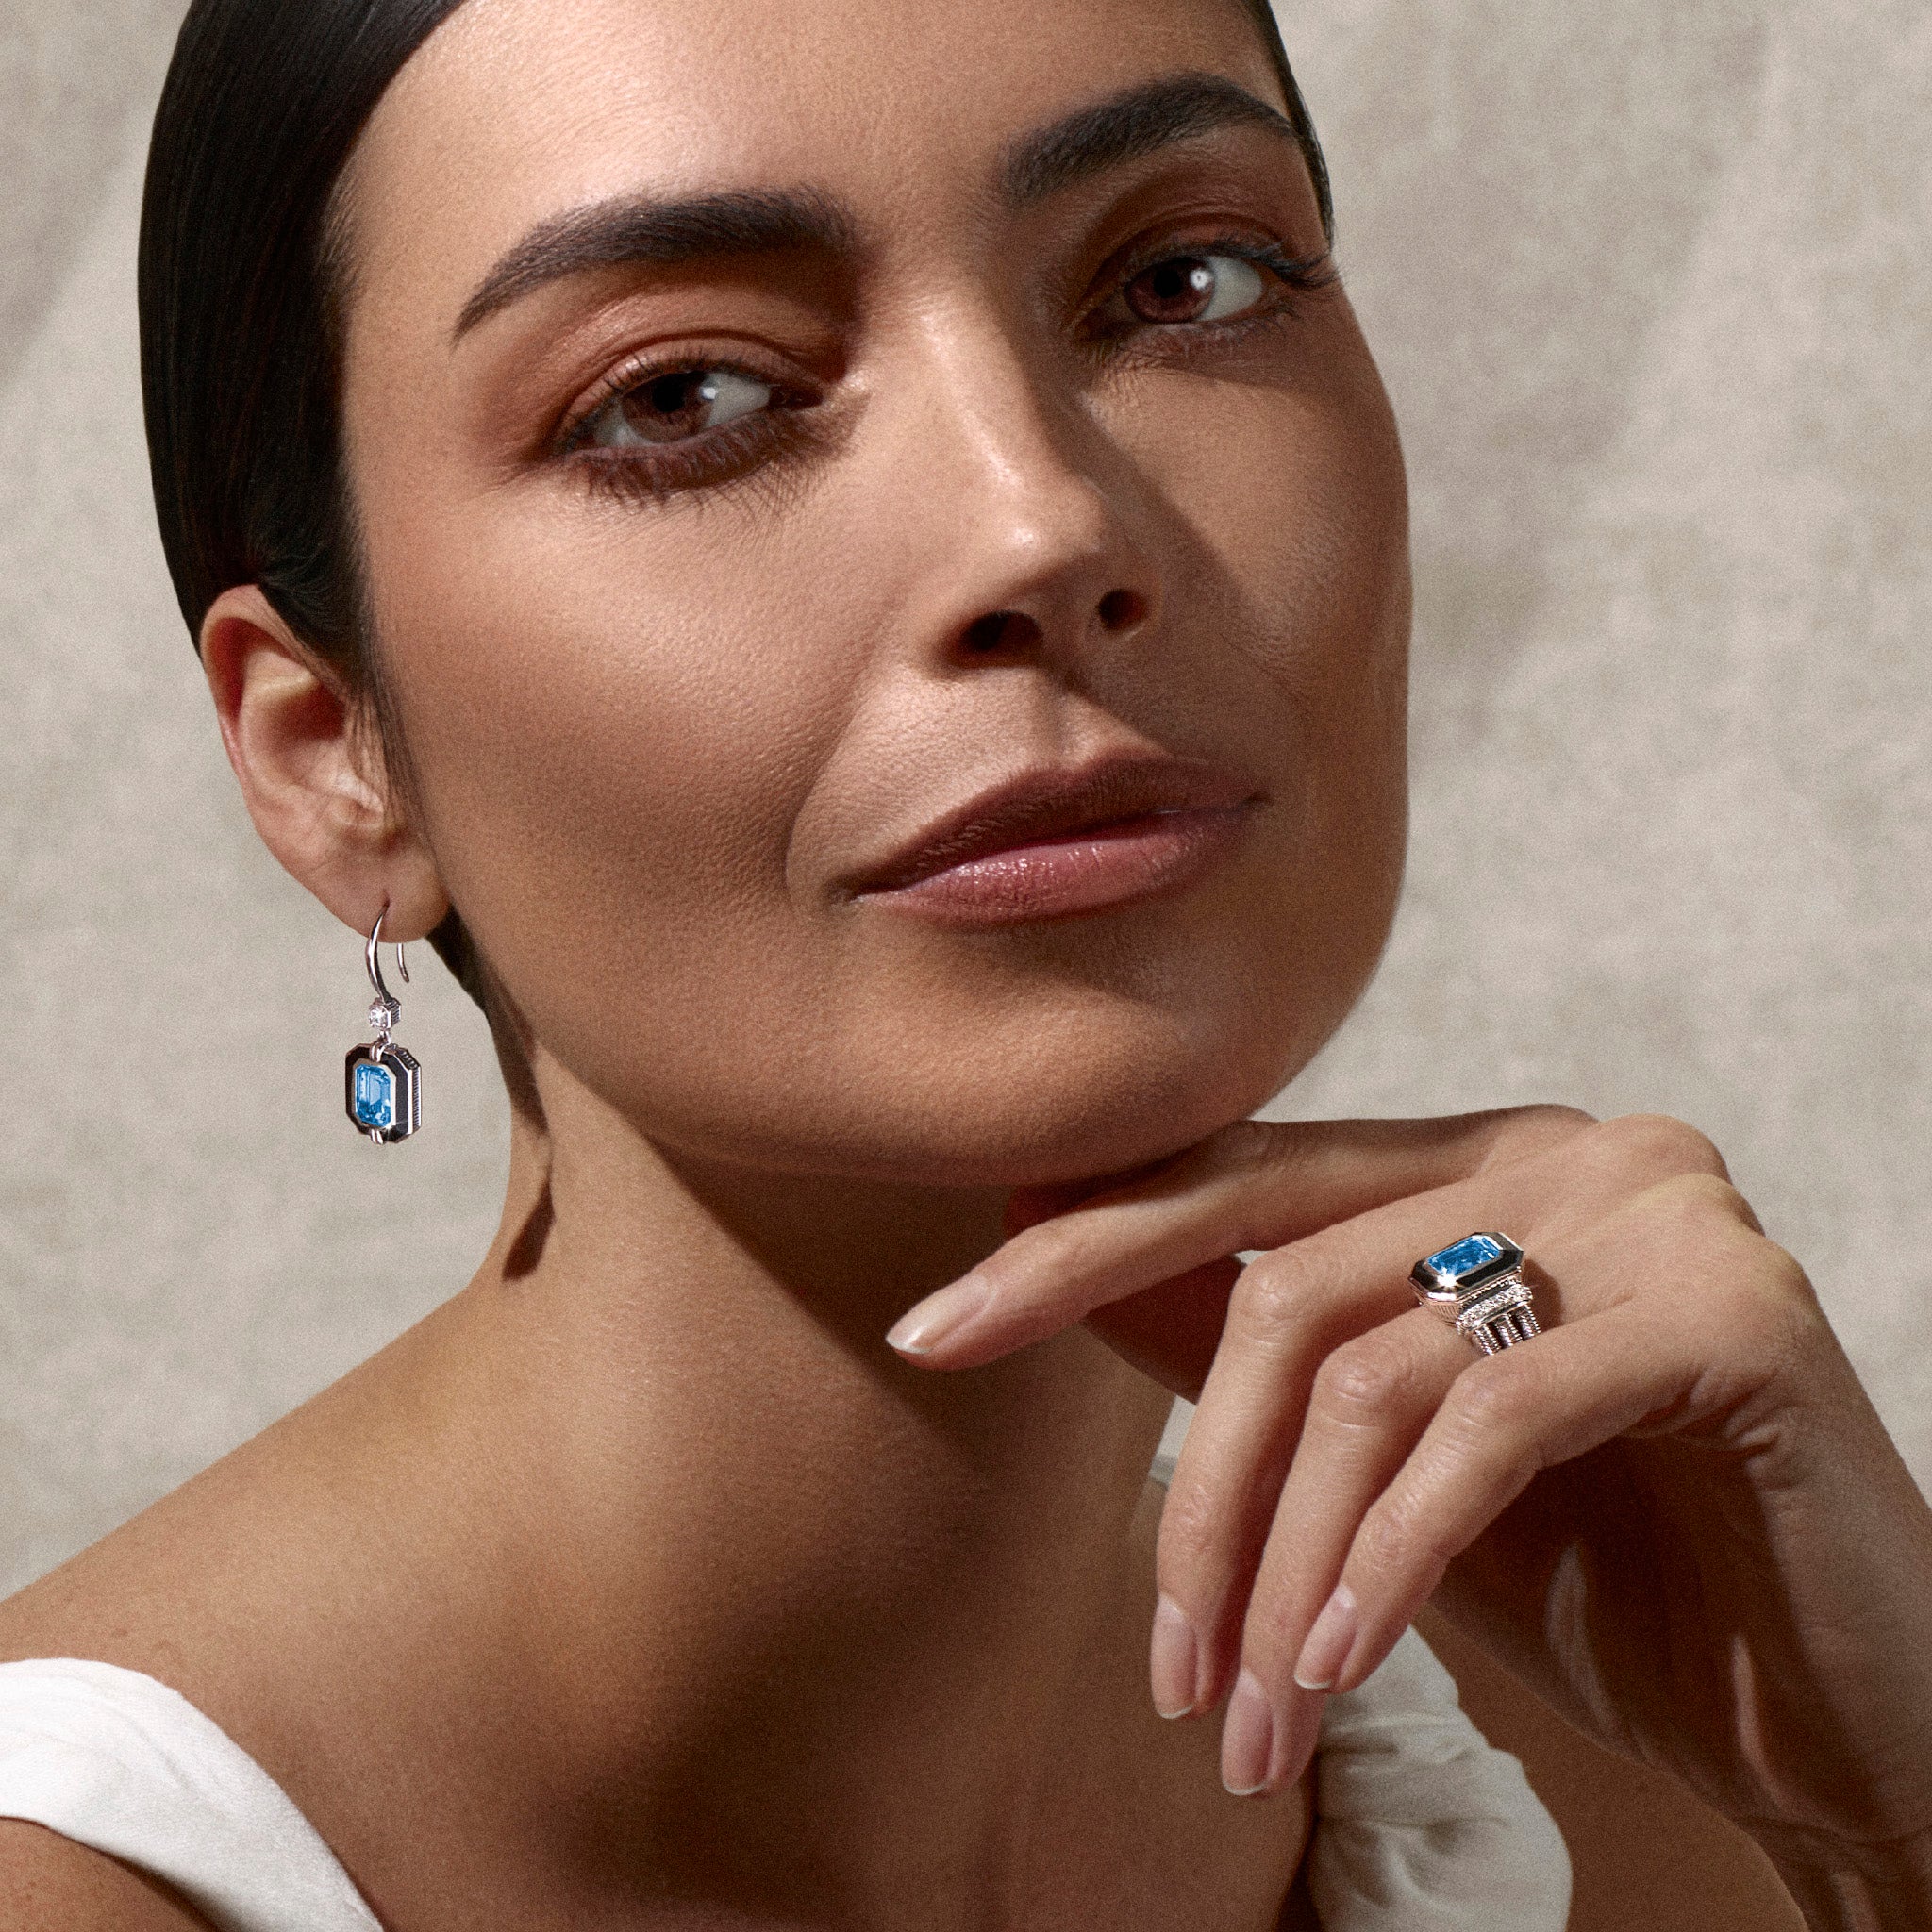 Adrienne Drop Earrings with Enamel, Swiss Blue Topaz and Diamonds